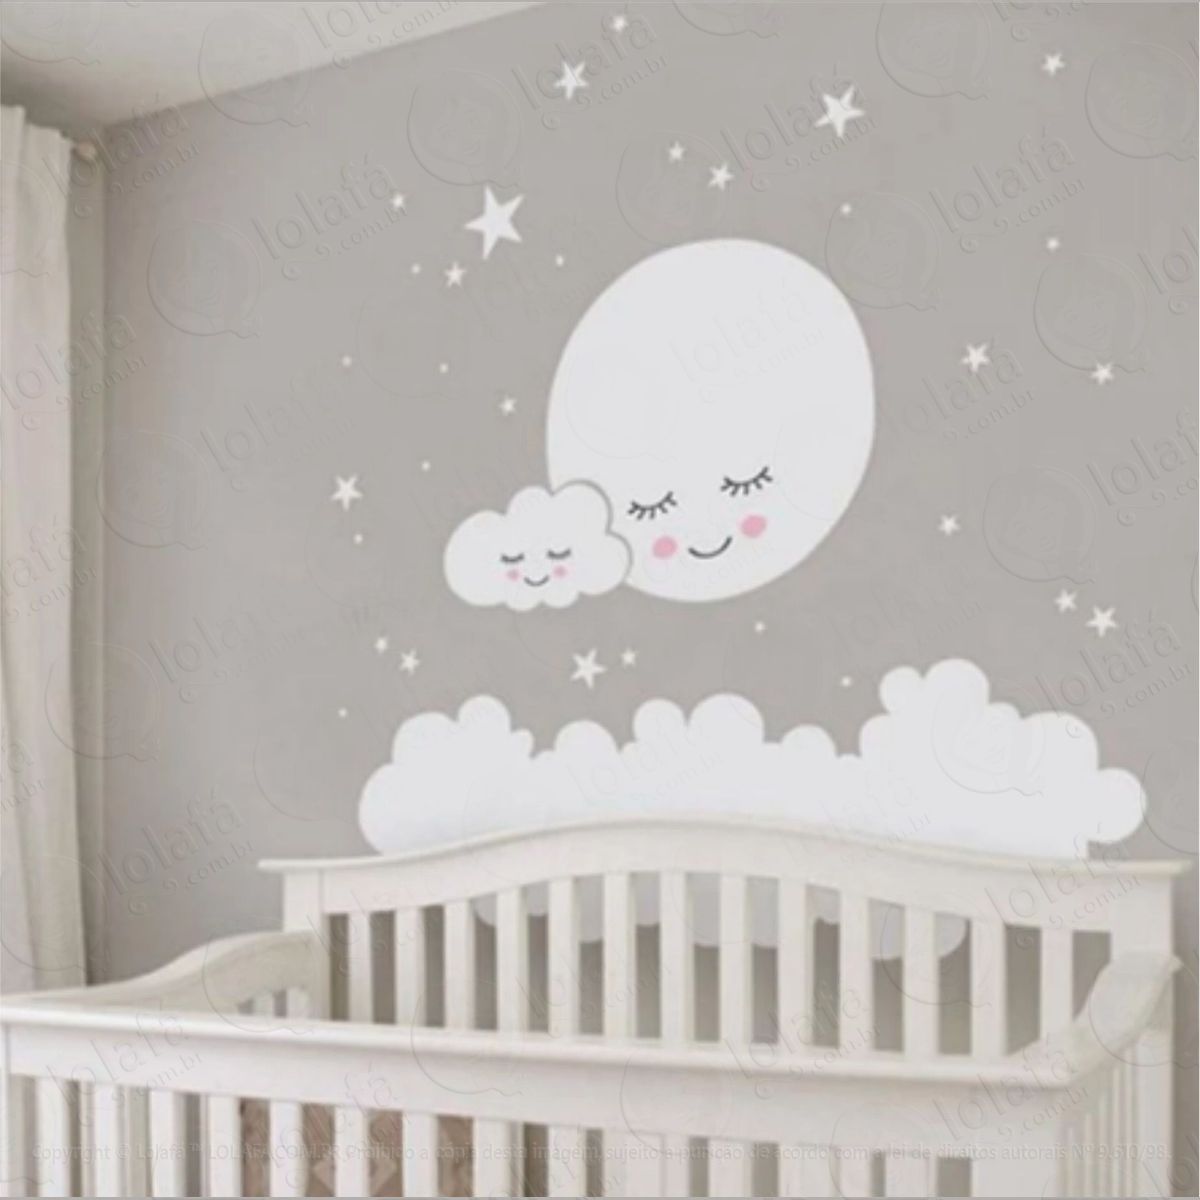 adesivo quarto bebê lua nuvem e estrelas, decoração infantil mod:264